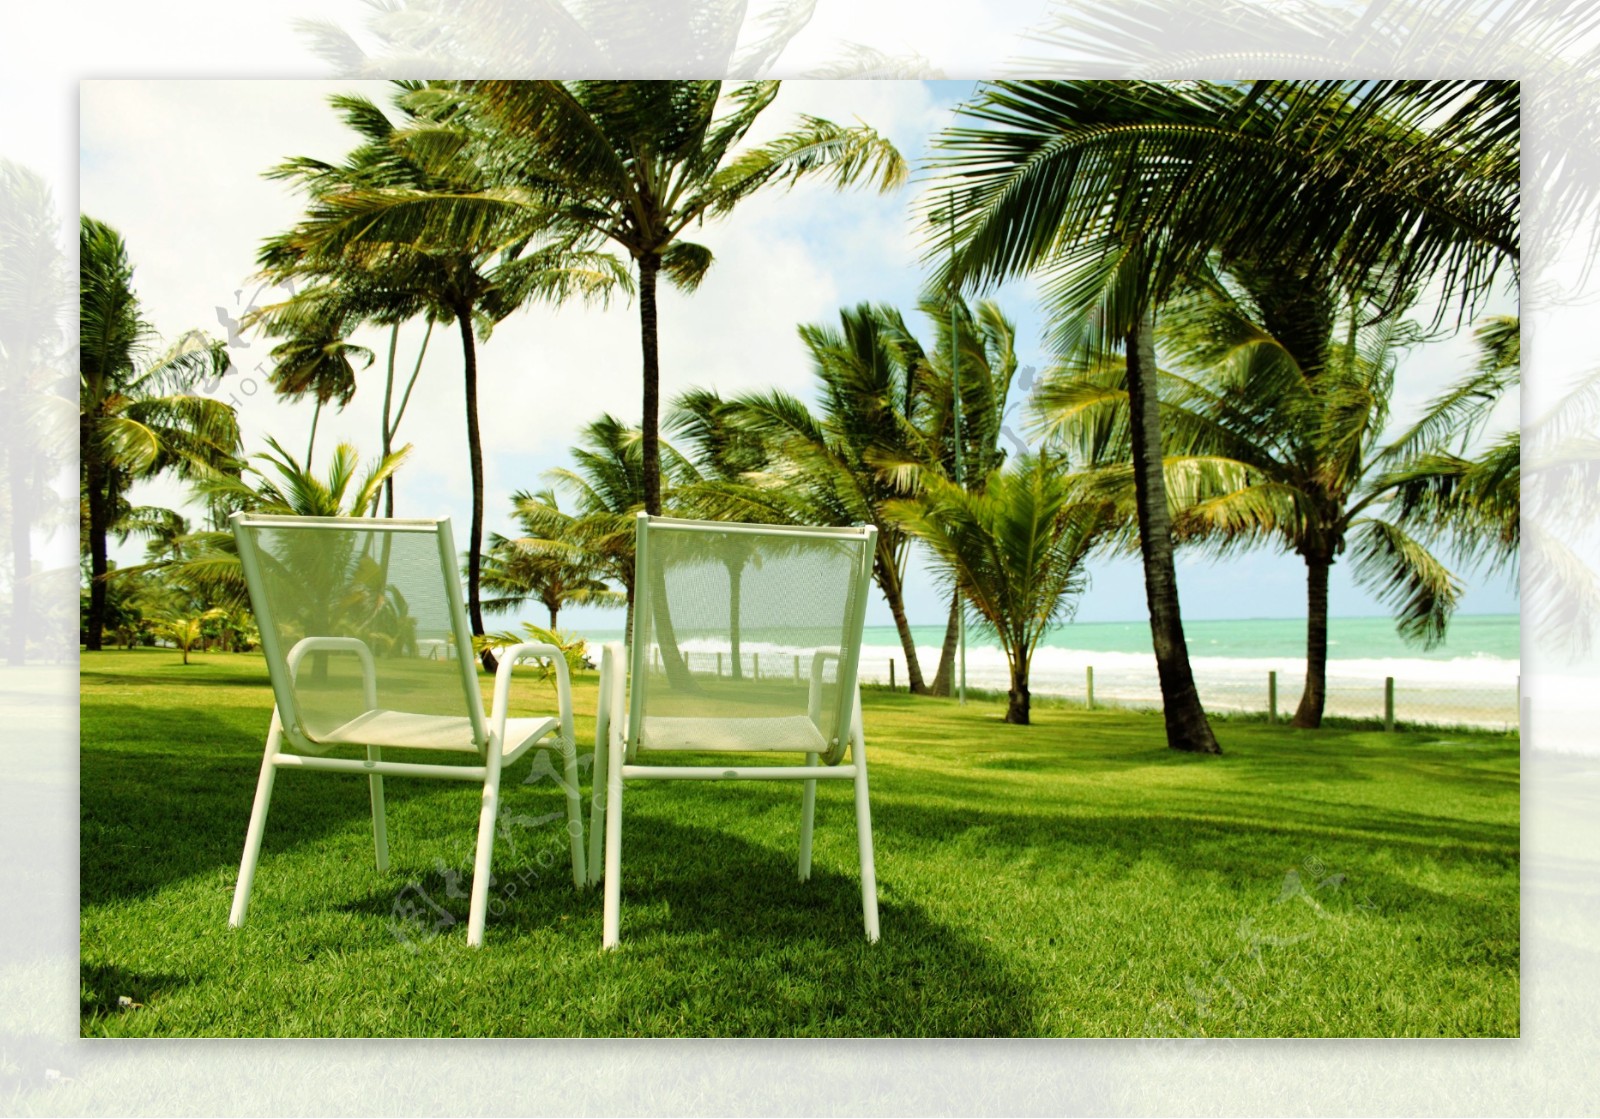 椰树与椅子摄影高清图片